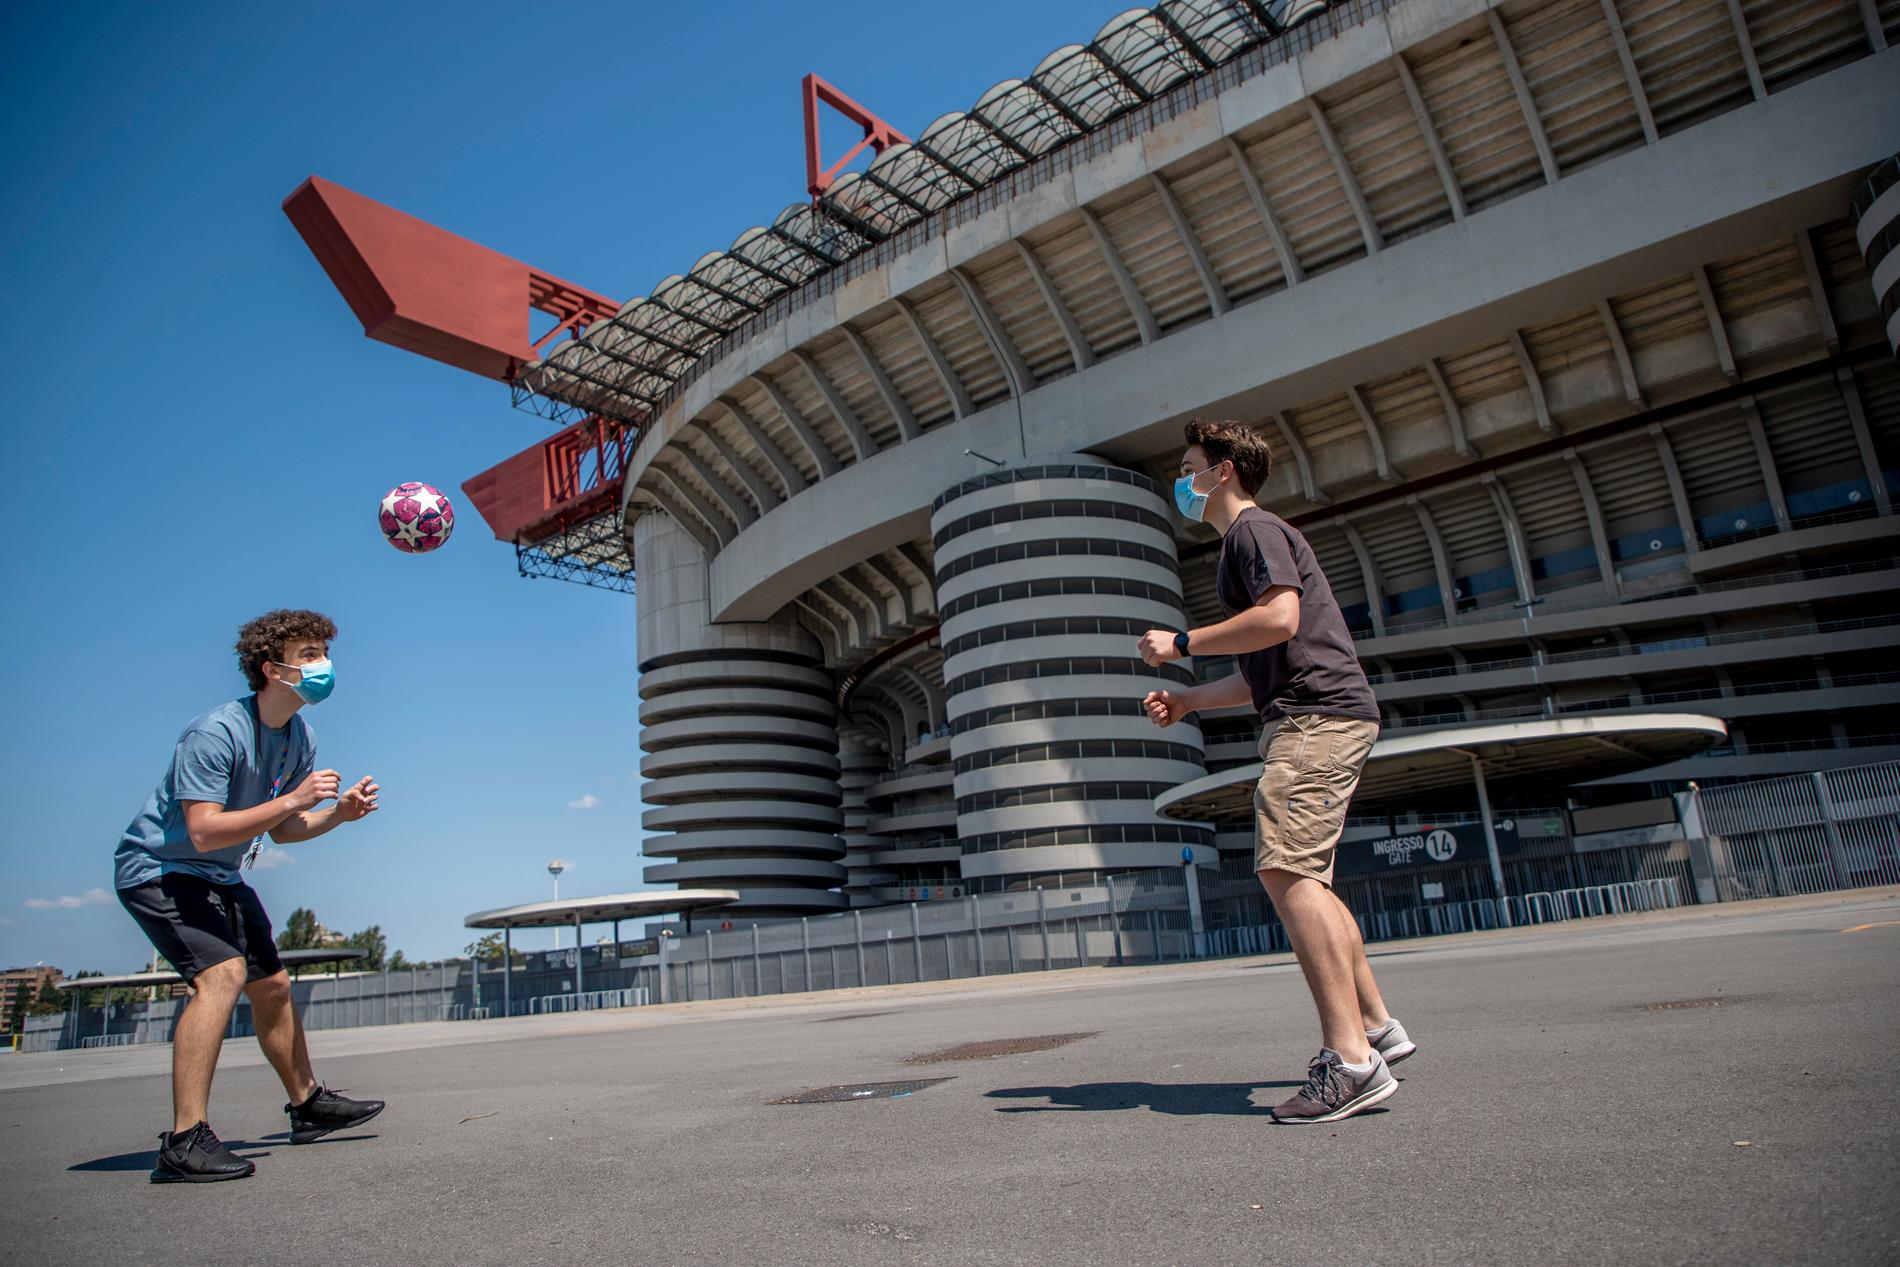 Alessandro och Alessandro passar på att spela fotboll utanför den öde San Siro Stadion. "Vi gillar energin här."